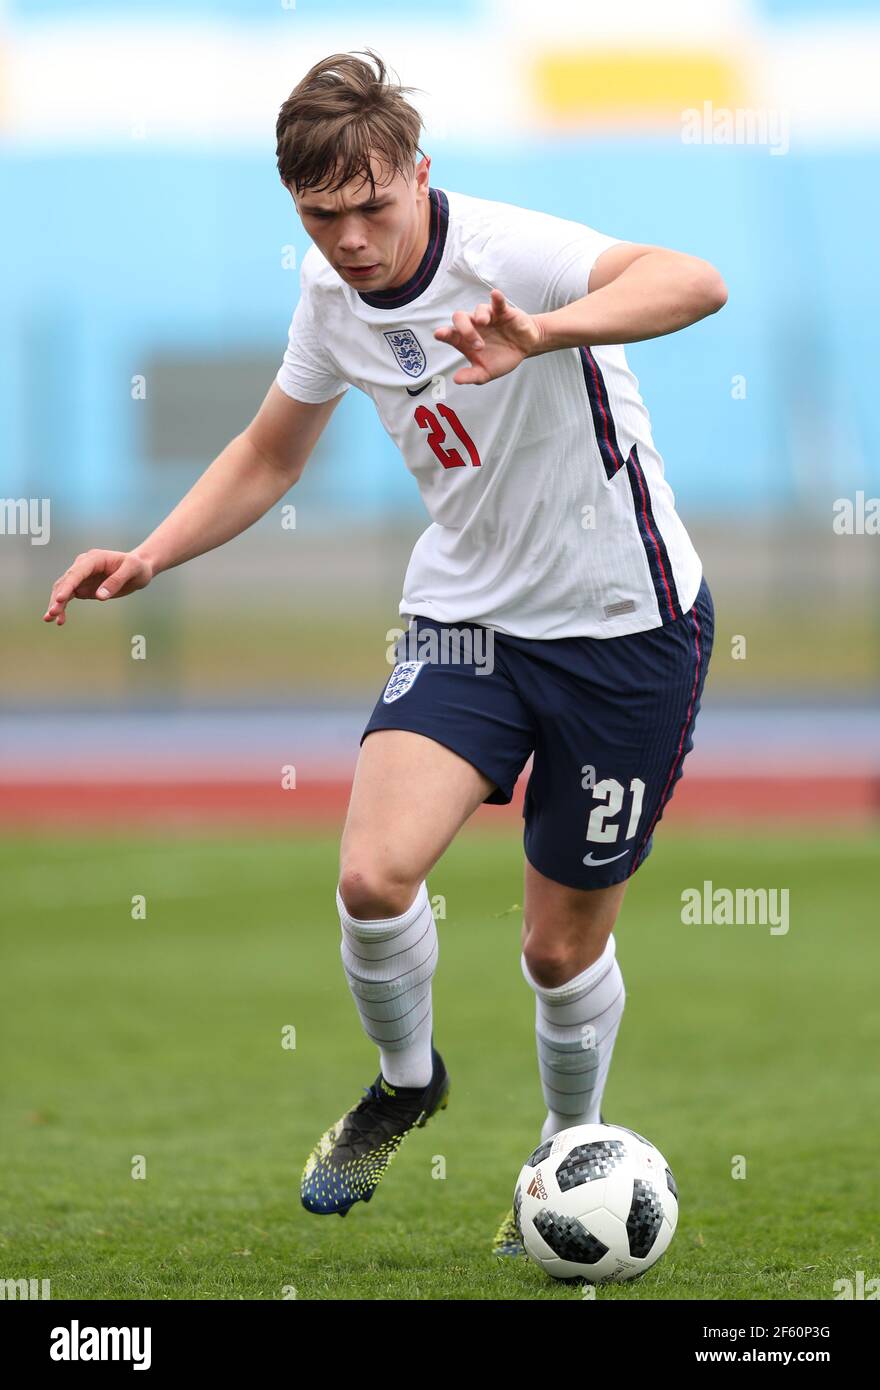 Callum Doyle de Inglaterra durante el partido amistoso internacional sub-18 en el estadio Leckwith, Cardiff. Fecha del cuadro: Lunes 29 de marzo de 2021. Foto de stock